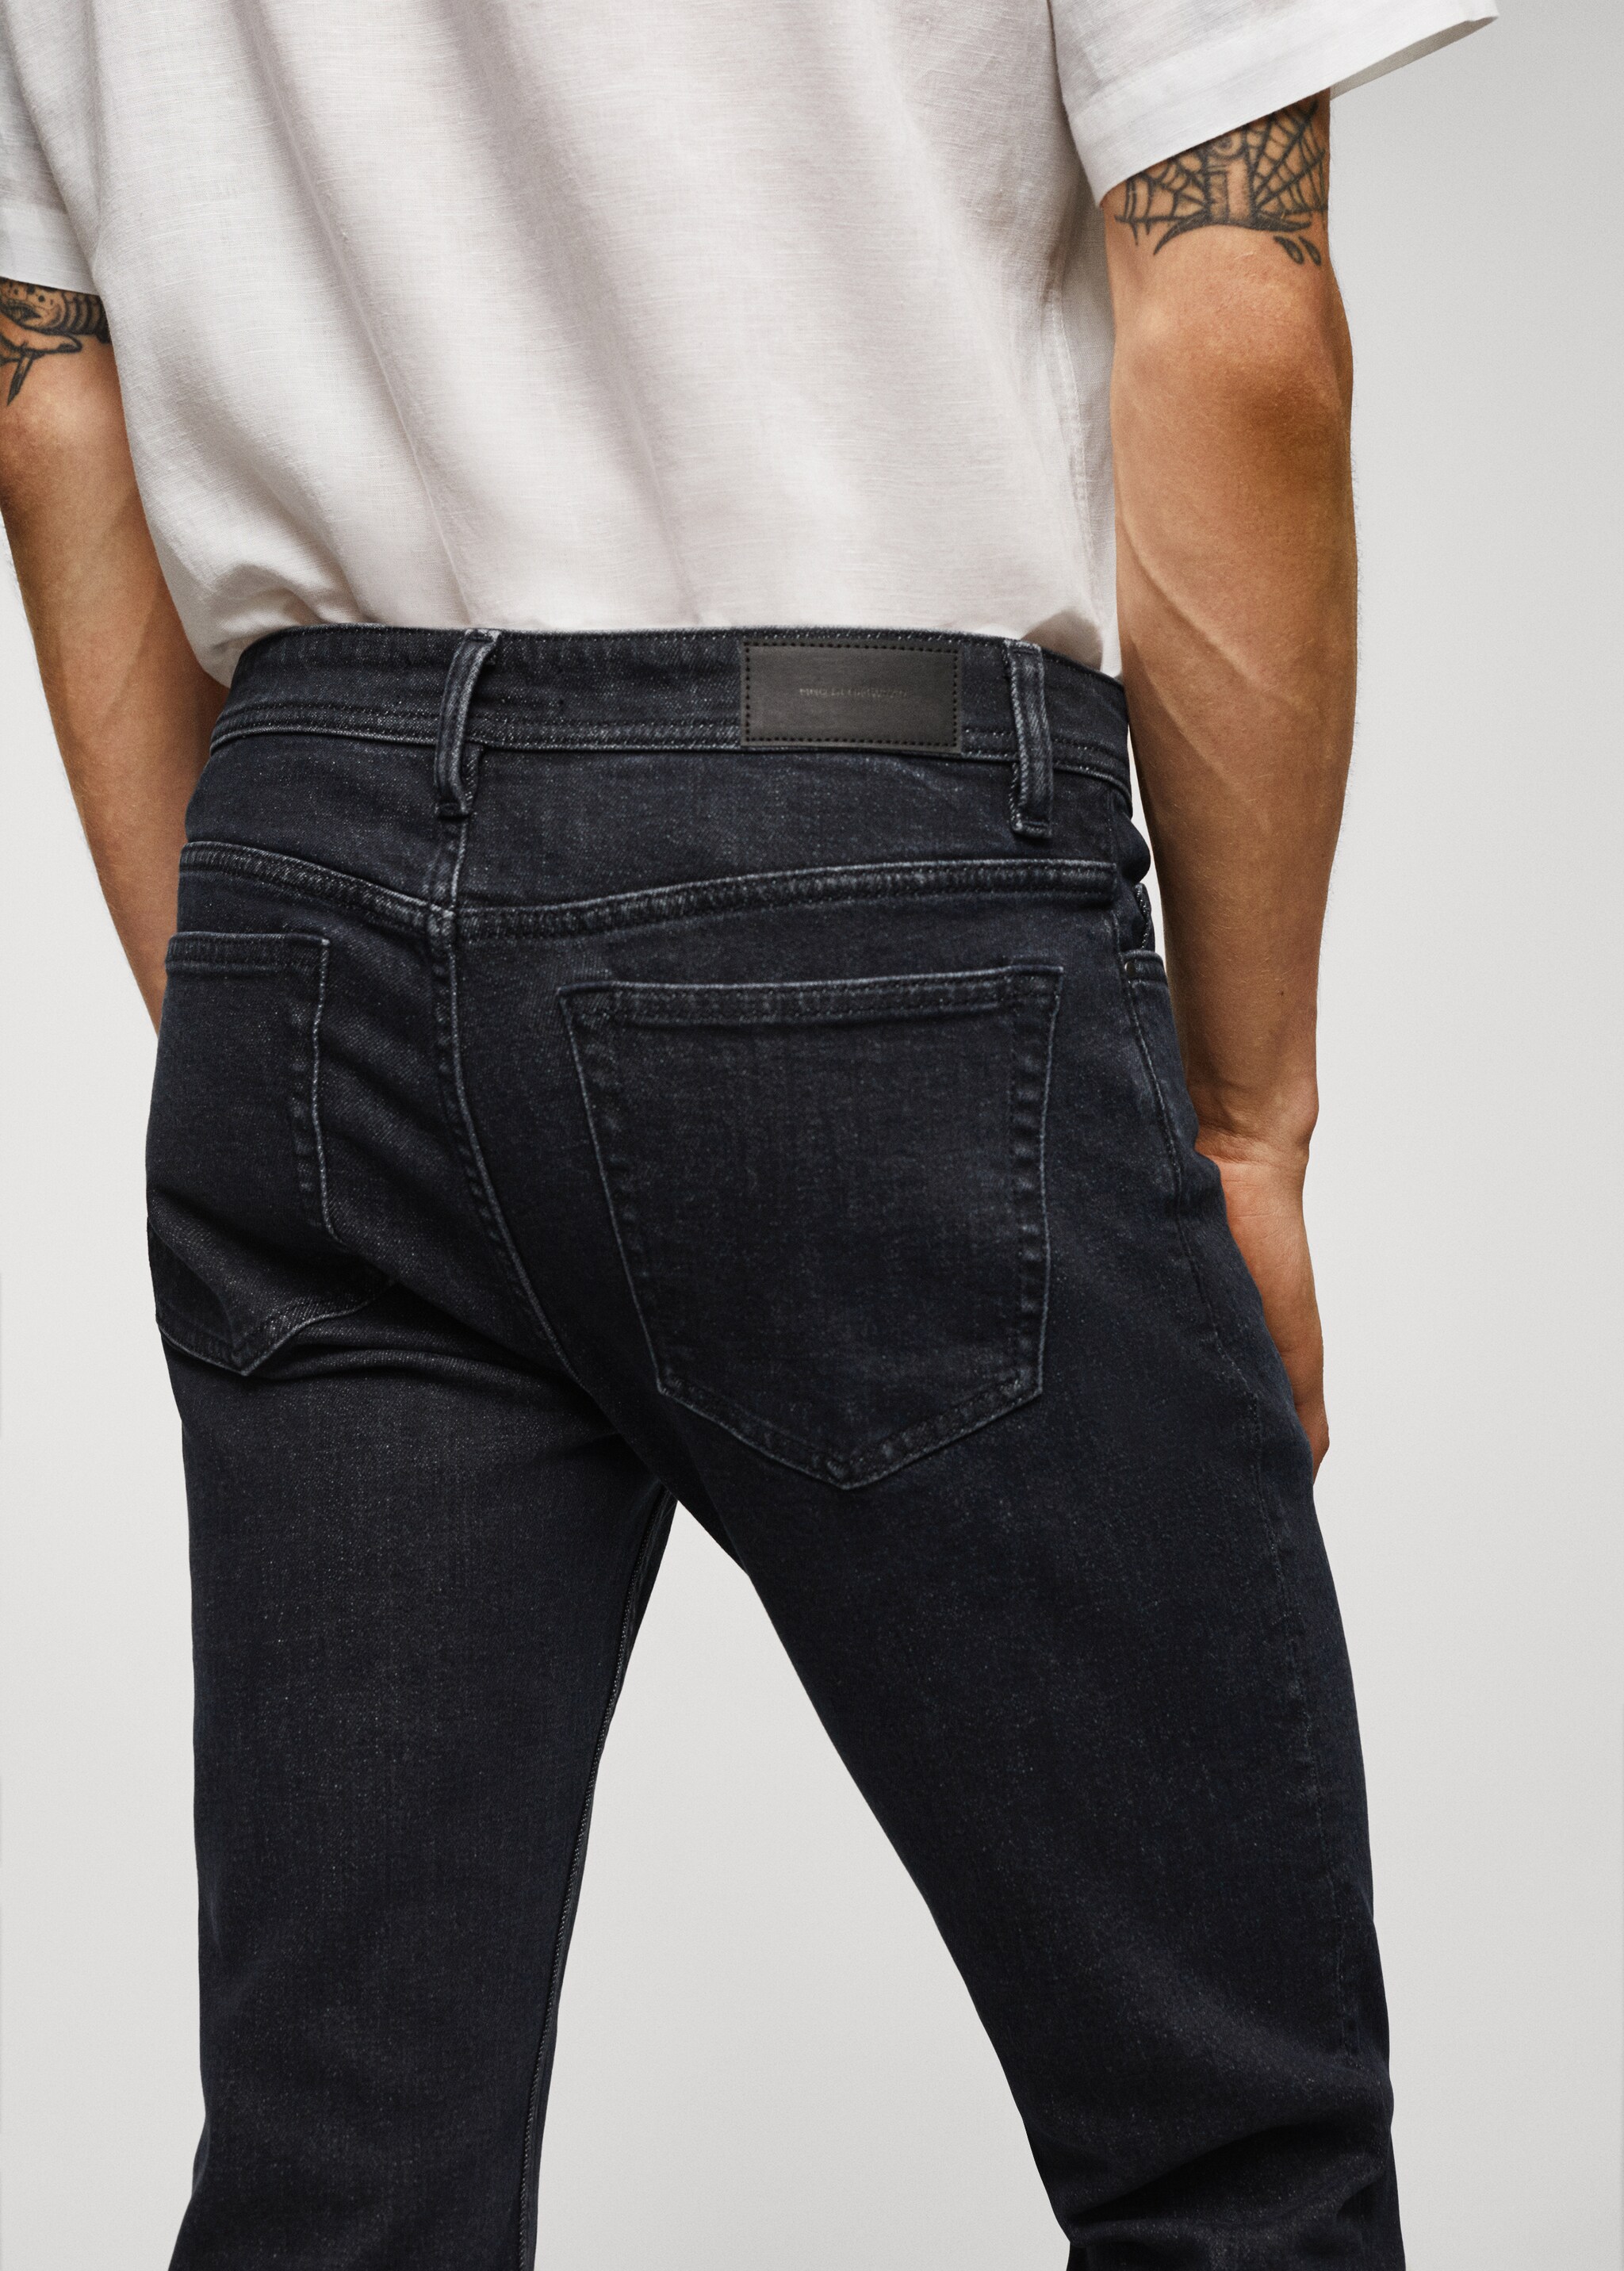 Jeans Jan slim fit  - Detalle del artículo 6